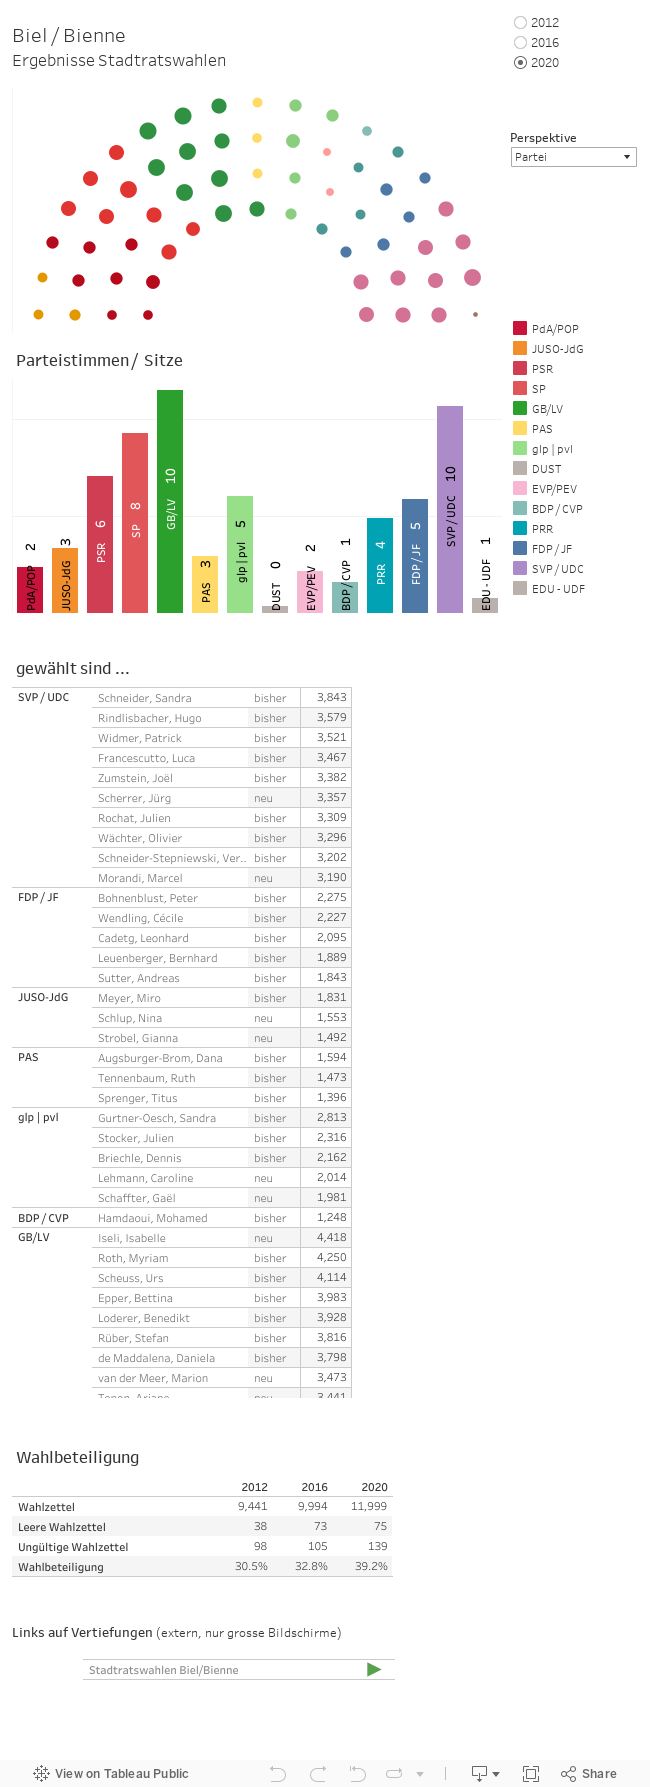 Interaktive Grafik der Ergebnisse für die Stadtratswahlen 2012, 2016 und 2020 (nach Partei, Geschlecht, Sprache und Alter). Anzeige der Parteistimmen und Sitze. Tabelle der Gewählten mit Anzahl der Stimmen und Wahlbeteiligung.